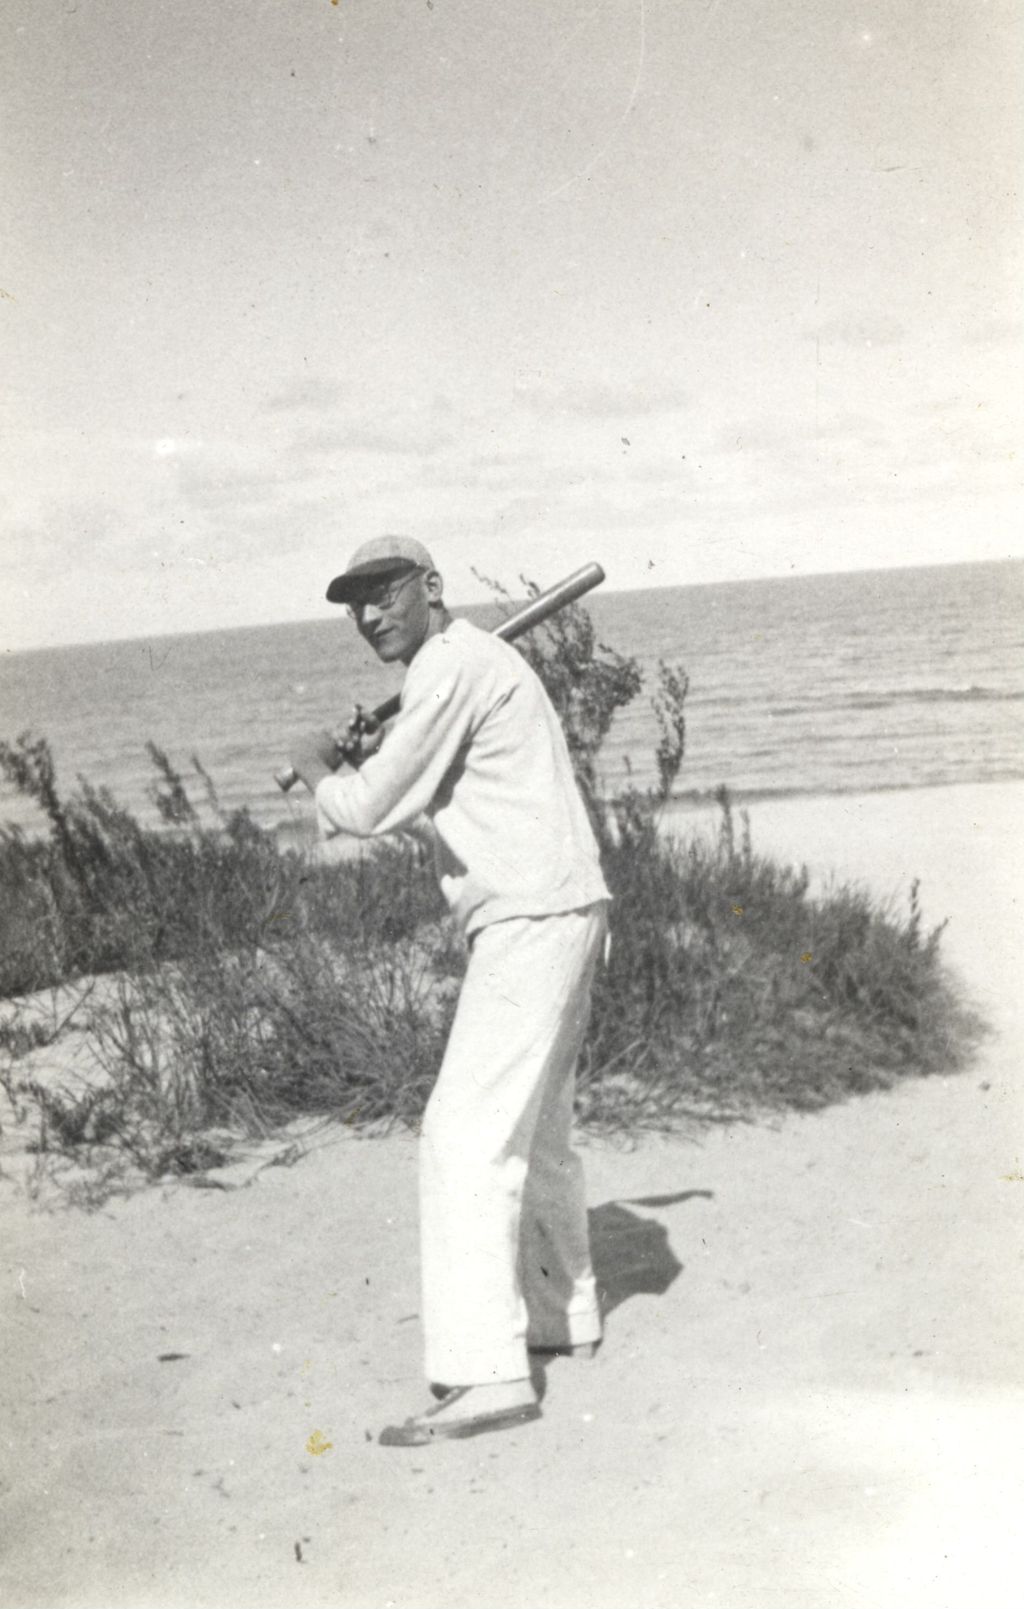 Miniature of Man holding a baseball bat at the lakeshore